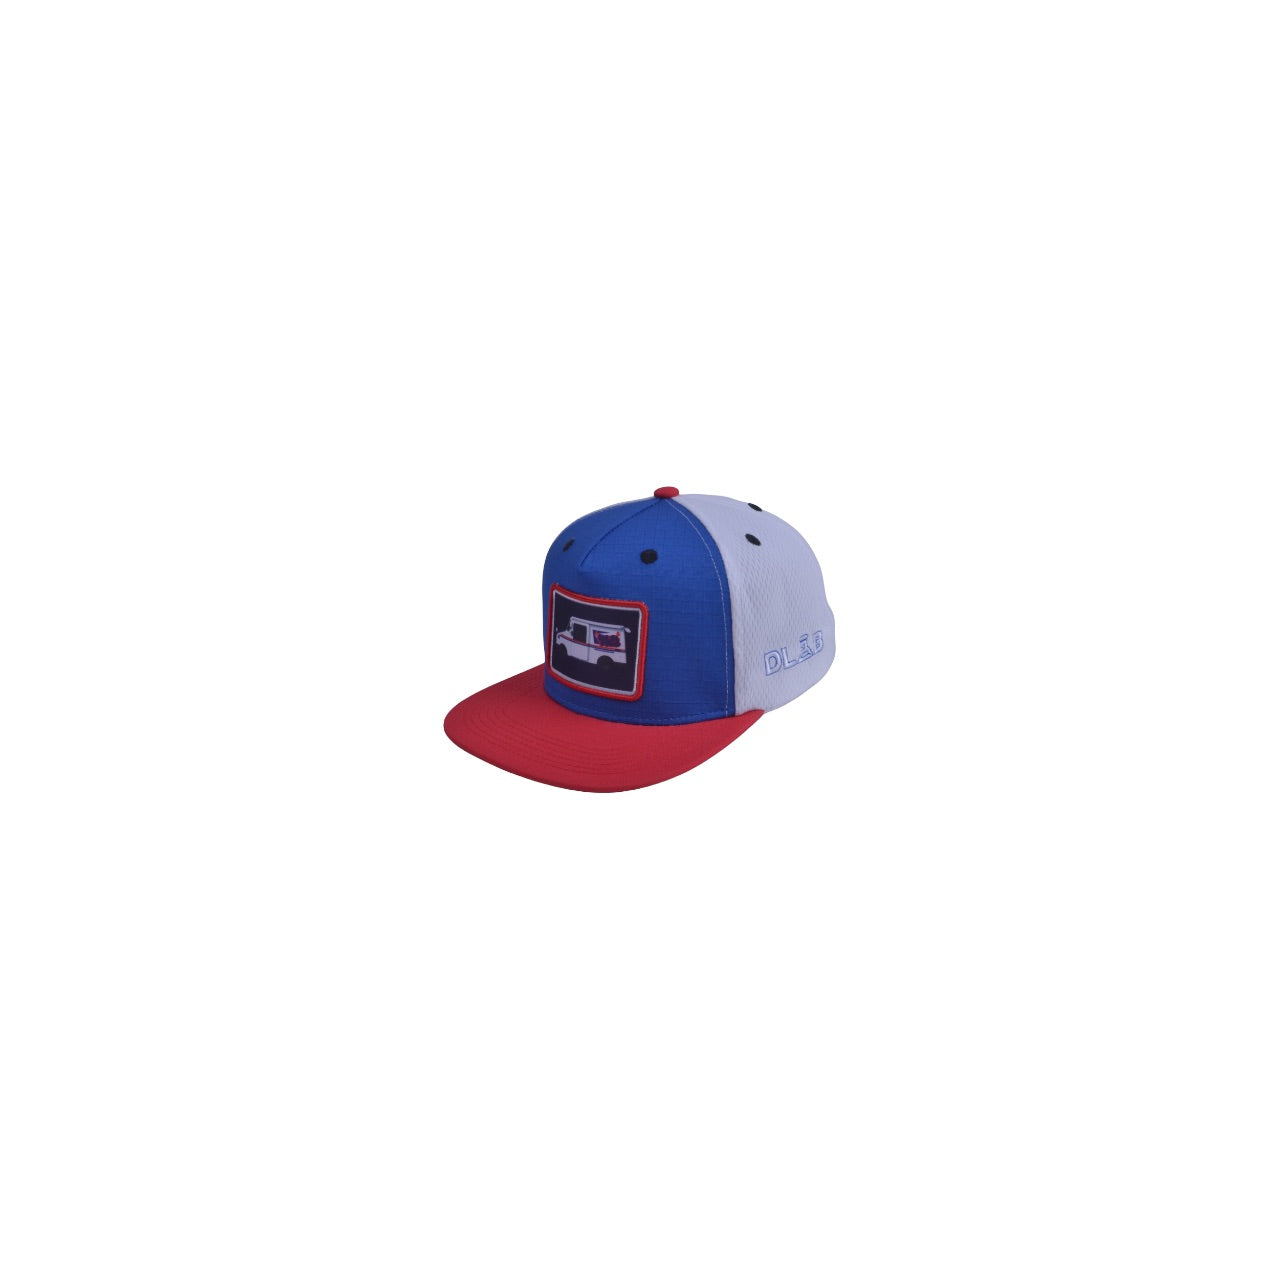 Dlab “Guaguita” Premium Trucker Hat